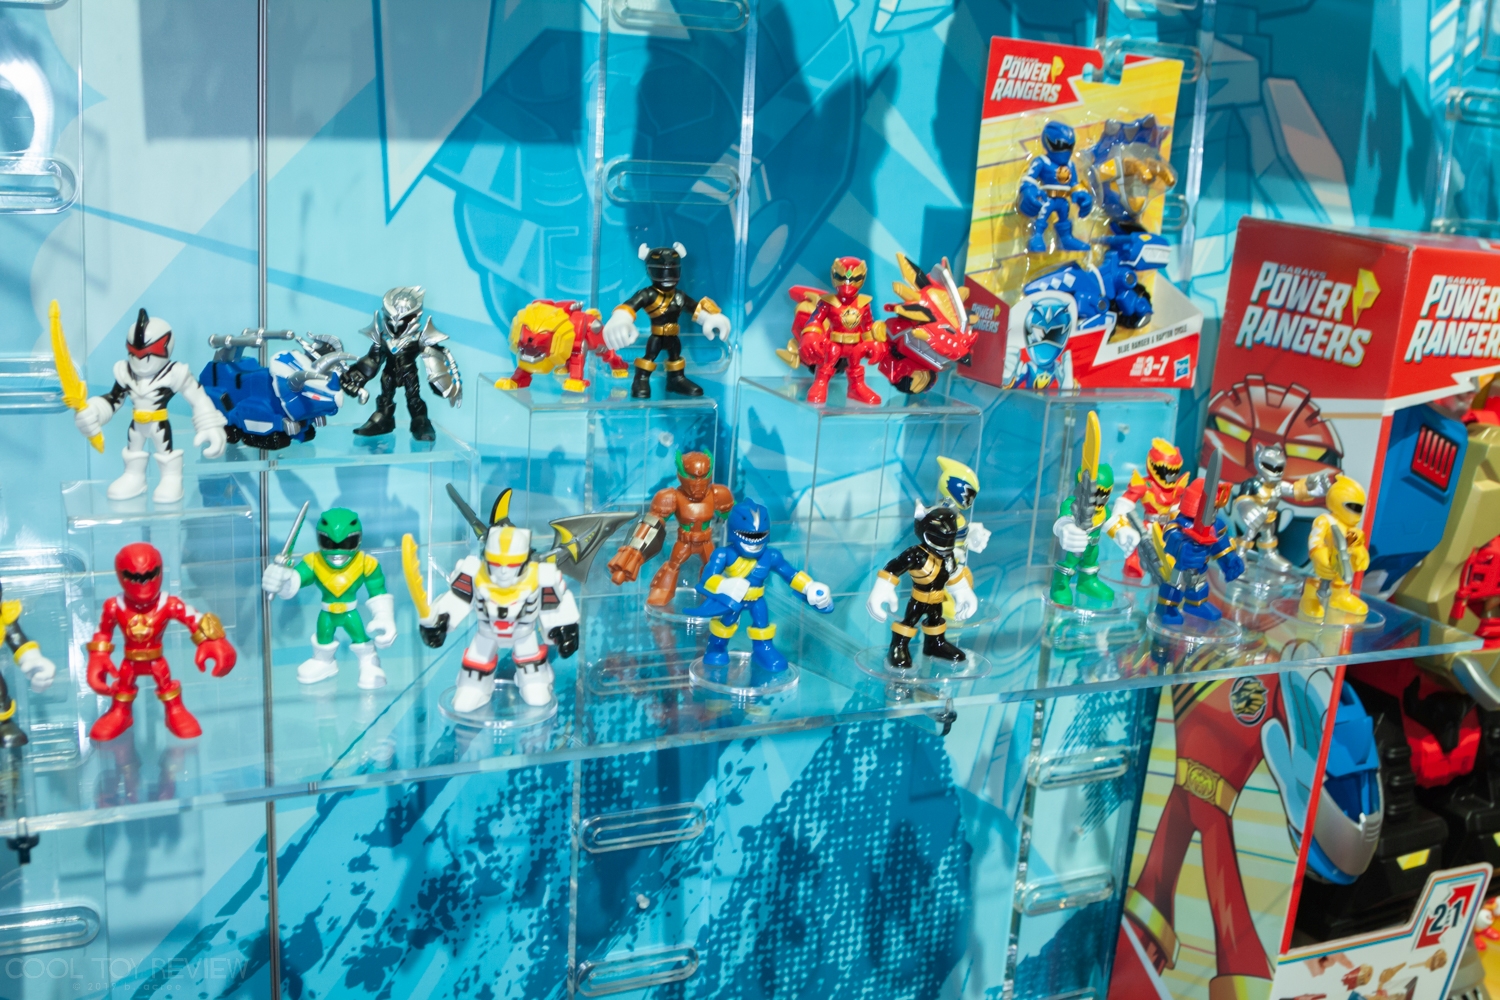 Power-Rangers-Hasbro-Toy-Fair-2019-026.jpg